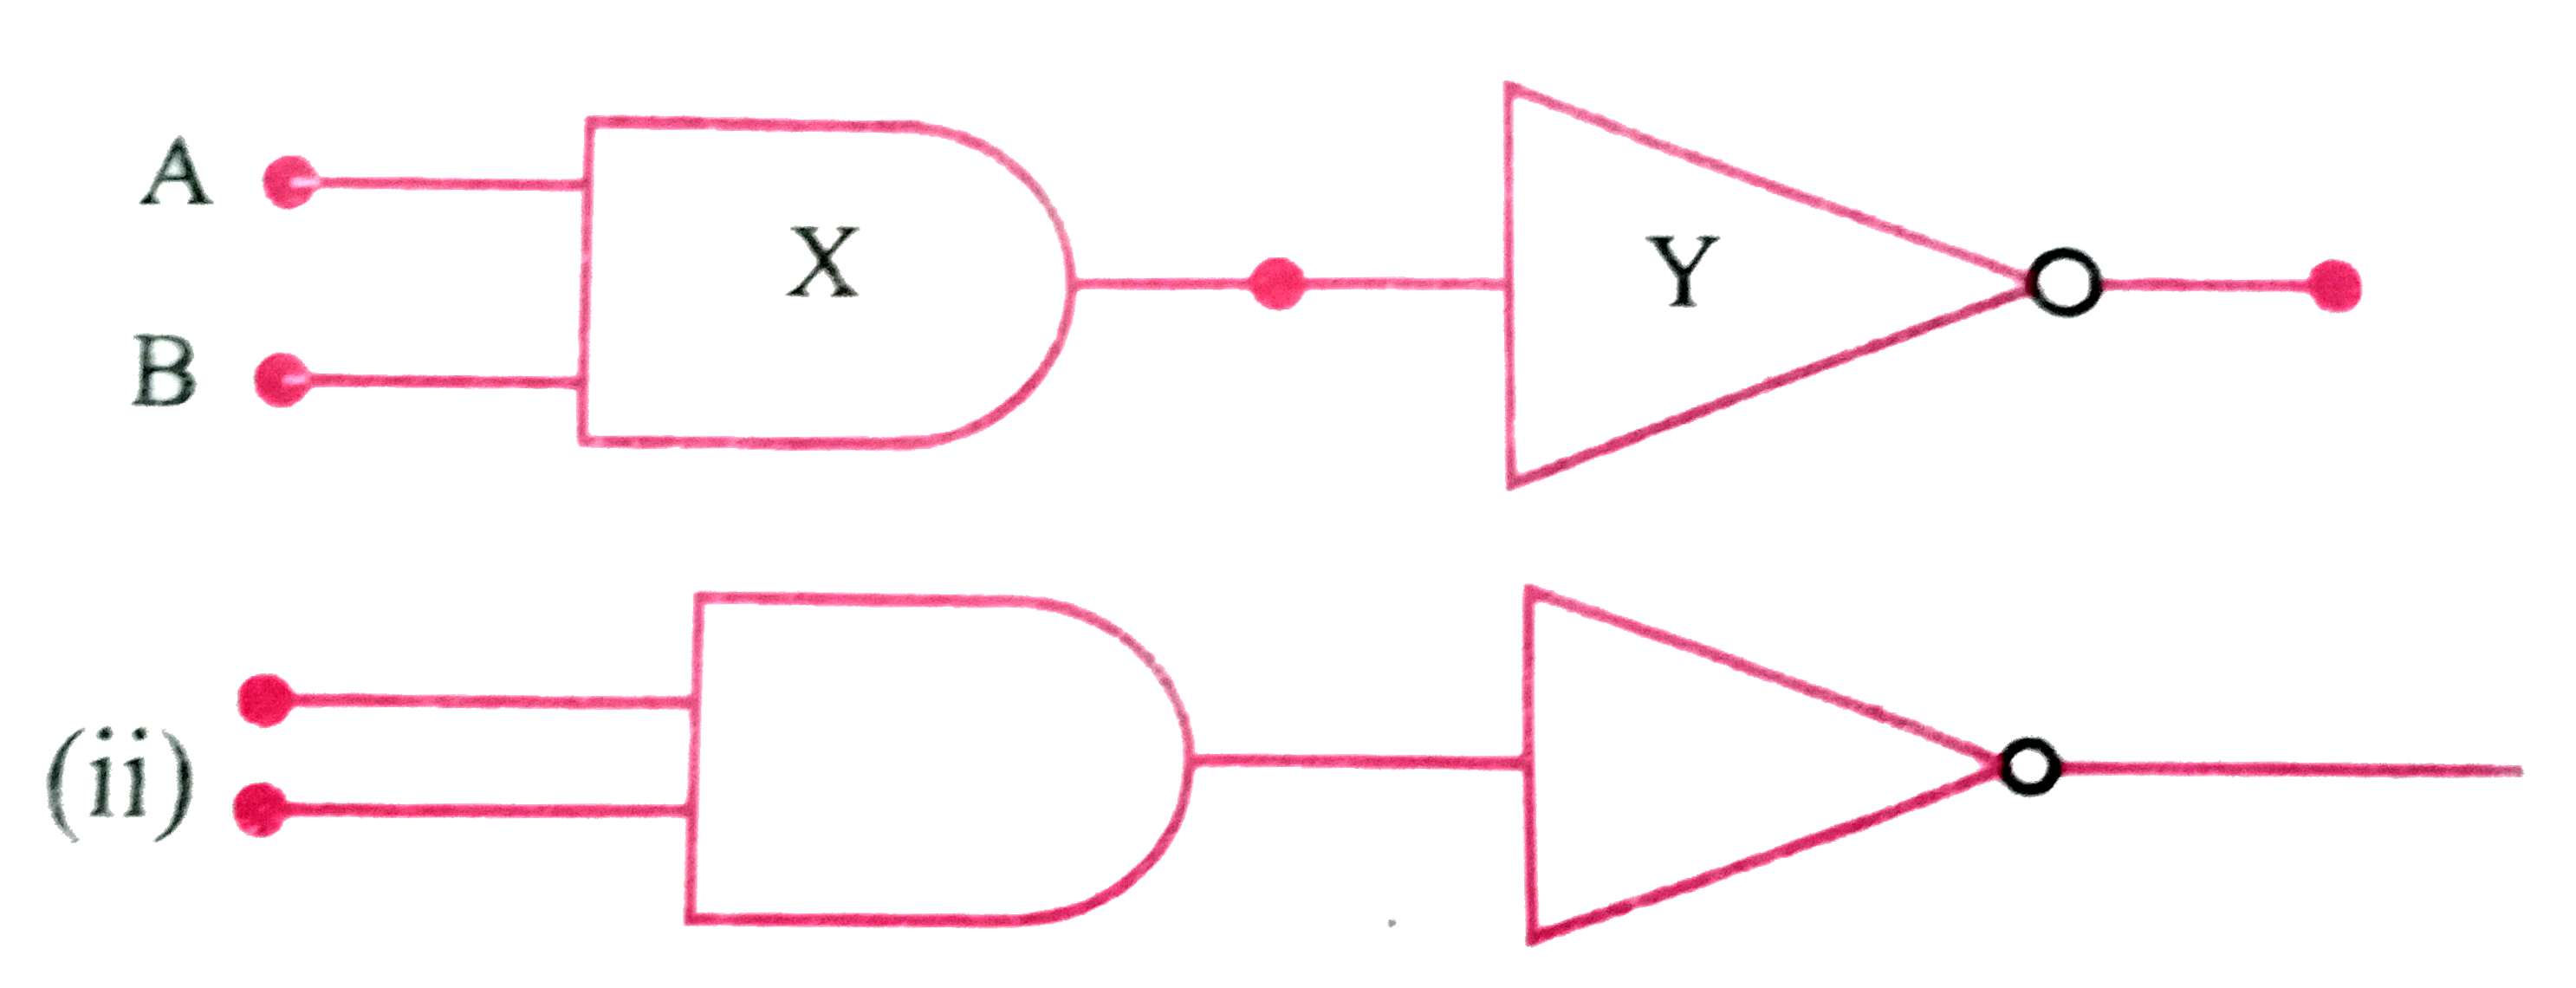 (i) निम्न चित्र में X और Y द्वारा अंकित लॉजिक गेट की पहचान कीजिए। Z पर (Output) लिखिए, जबकि A = 0 , B = 0 तथा A = 1, B = 1         यह चित्र किस लॉजिक गेट का है ? इसका बूलीयन व्यंजक लिखिए तथा सत्य सारणी बनाइये।